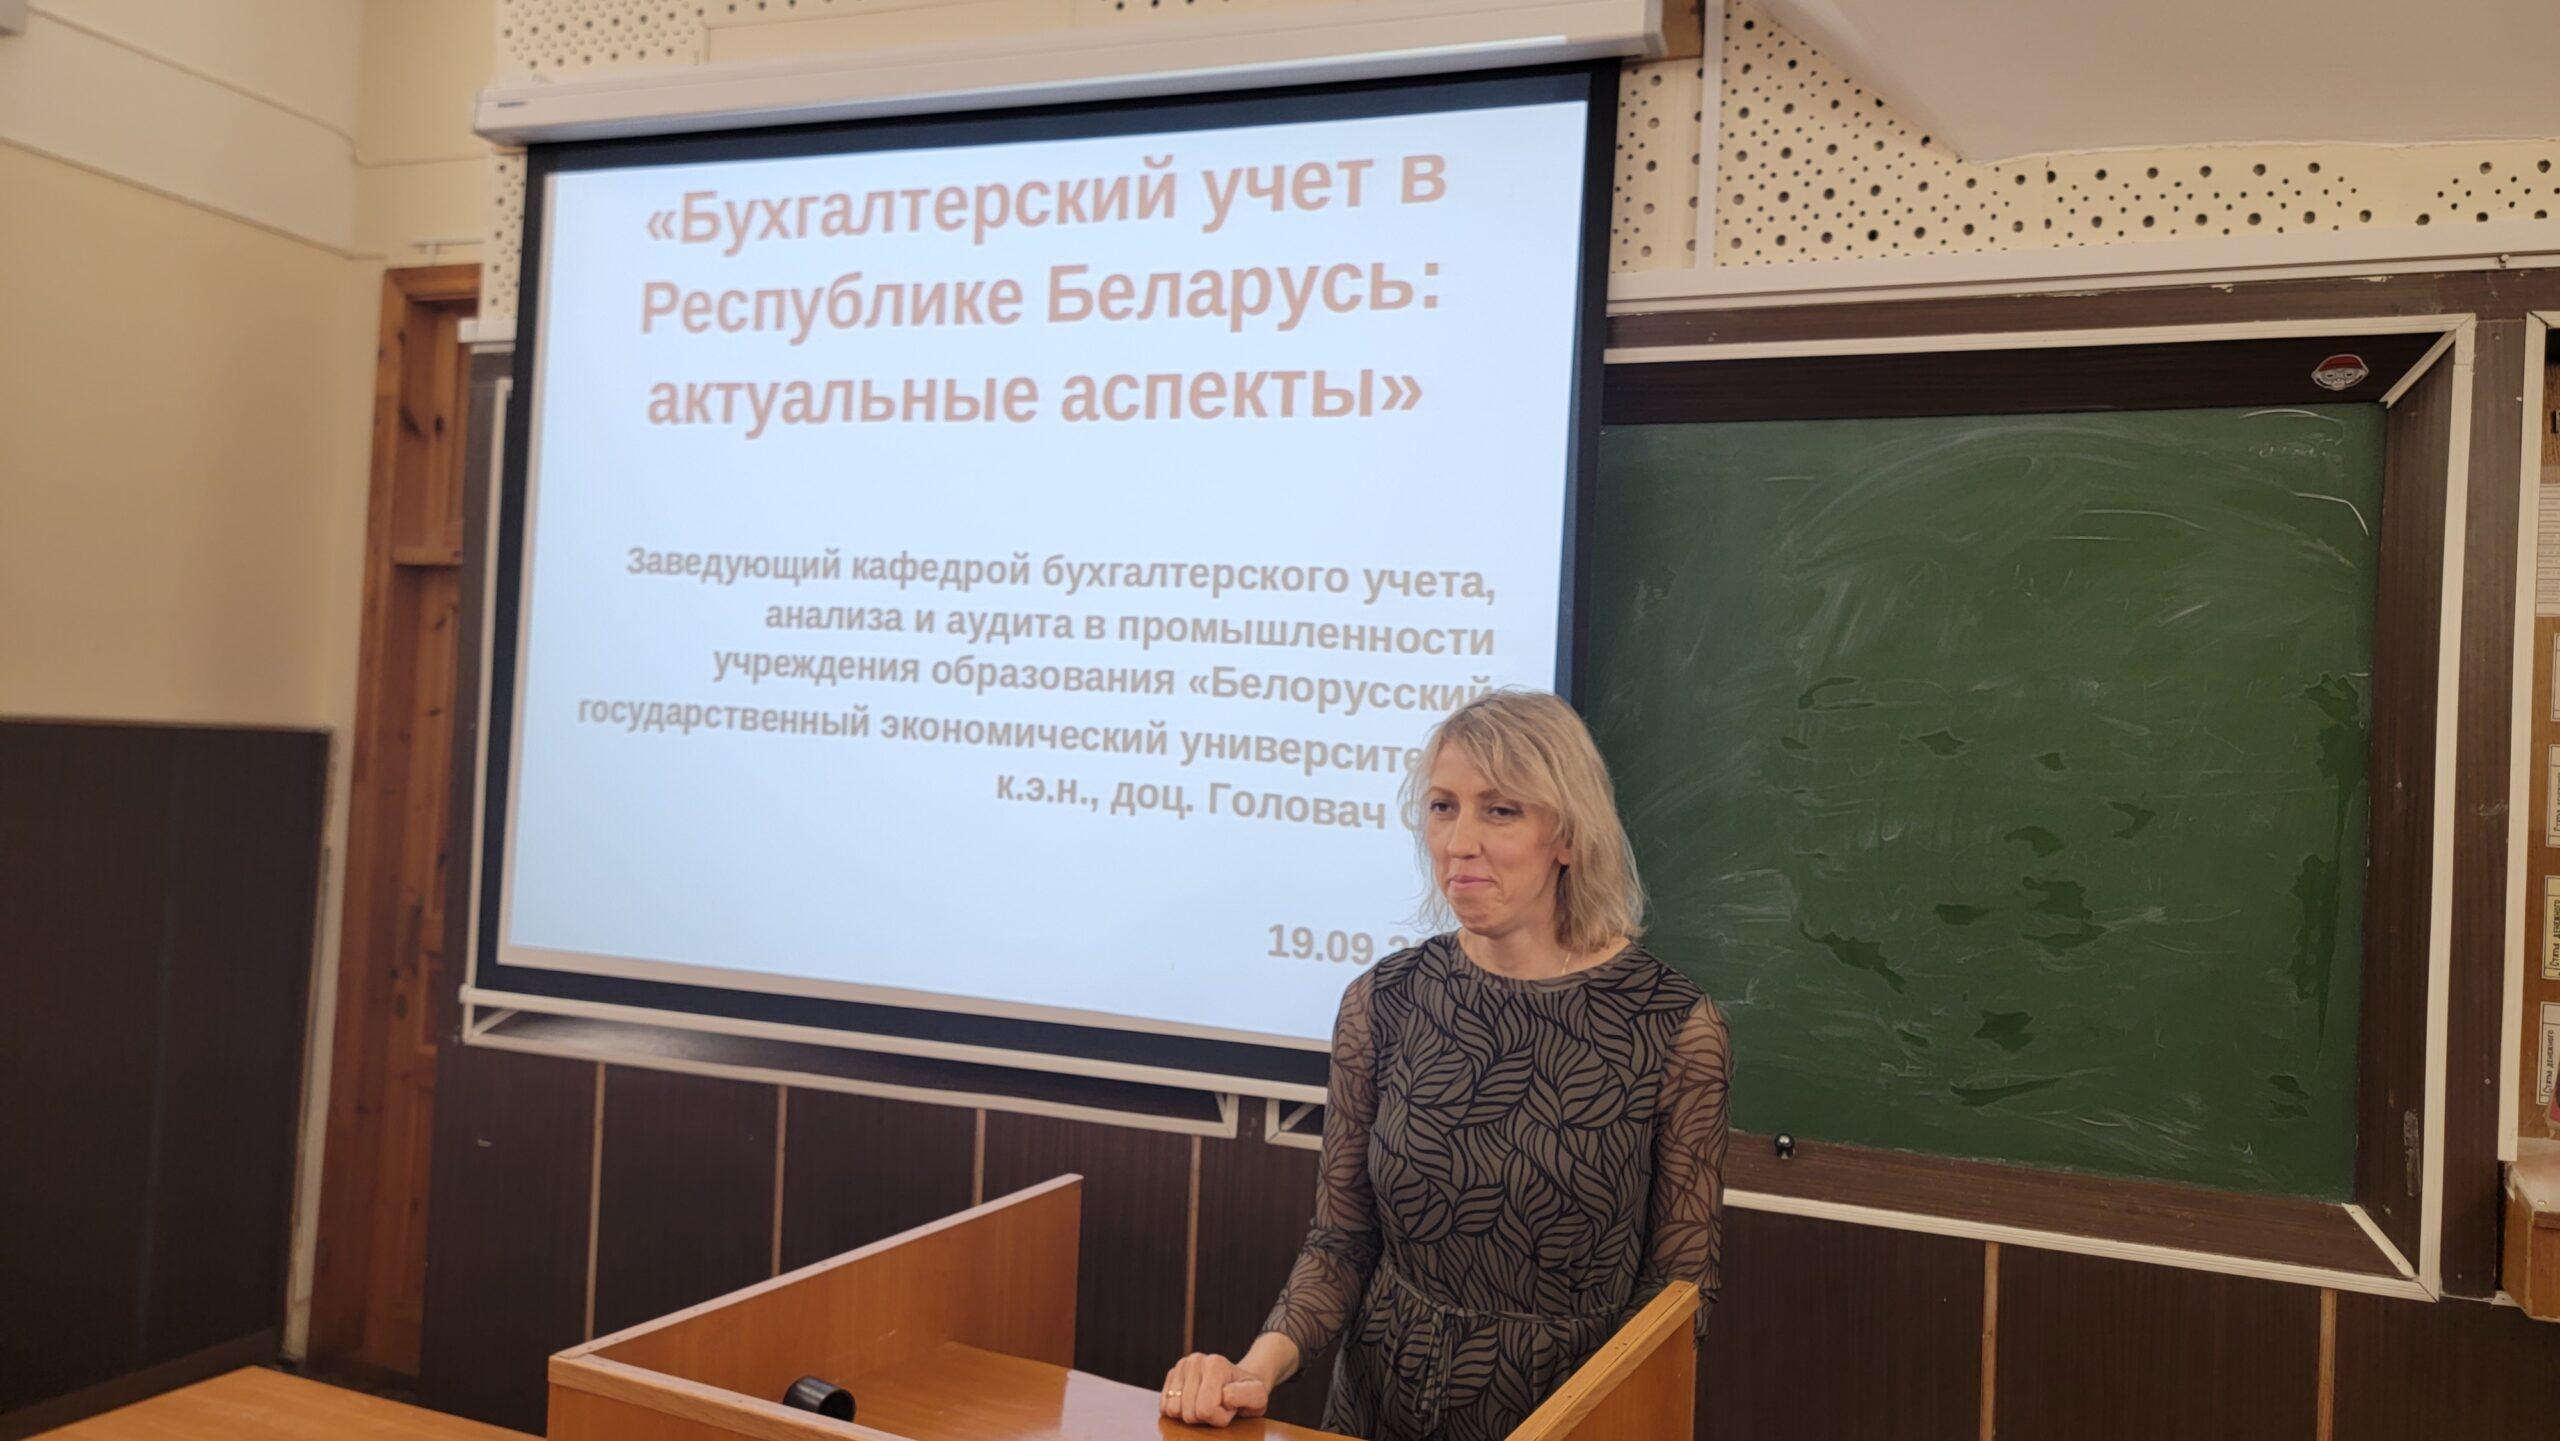 Стажировка на кафедре бухгалтерского учета и анализа коллеги из Минска (Республика Беларусь)